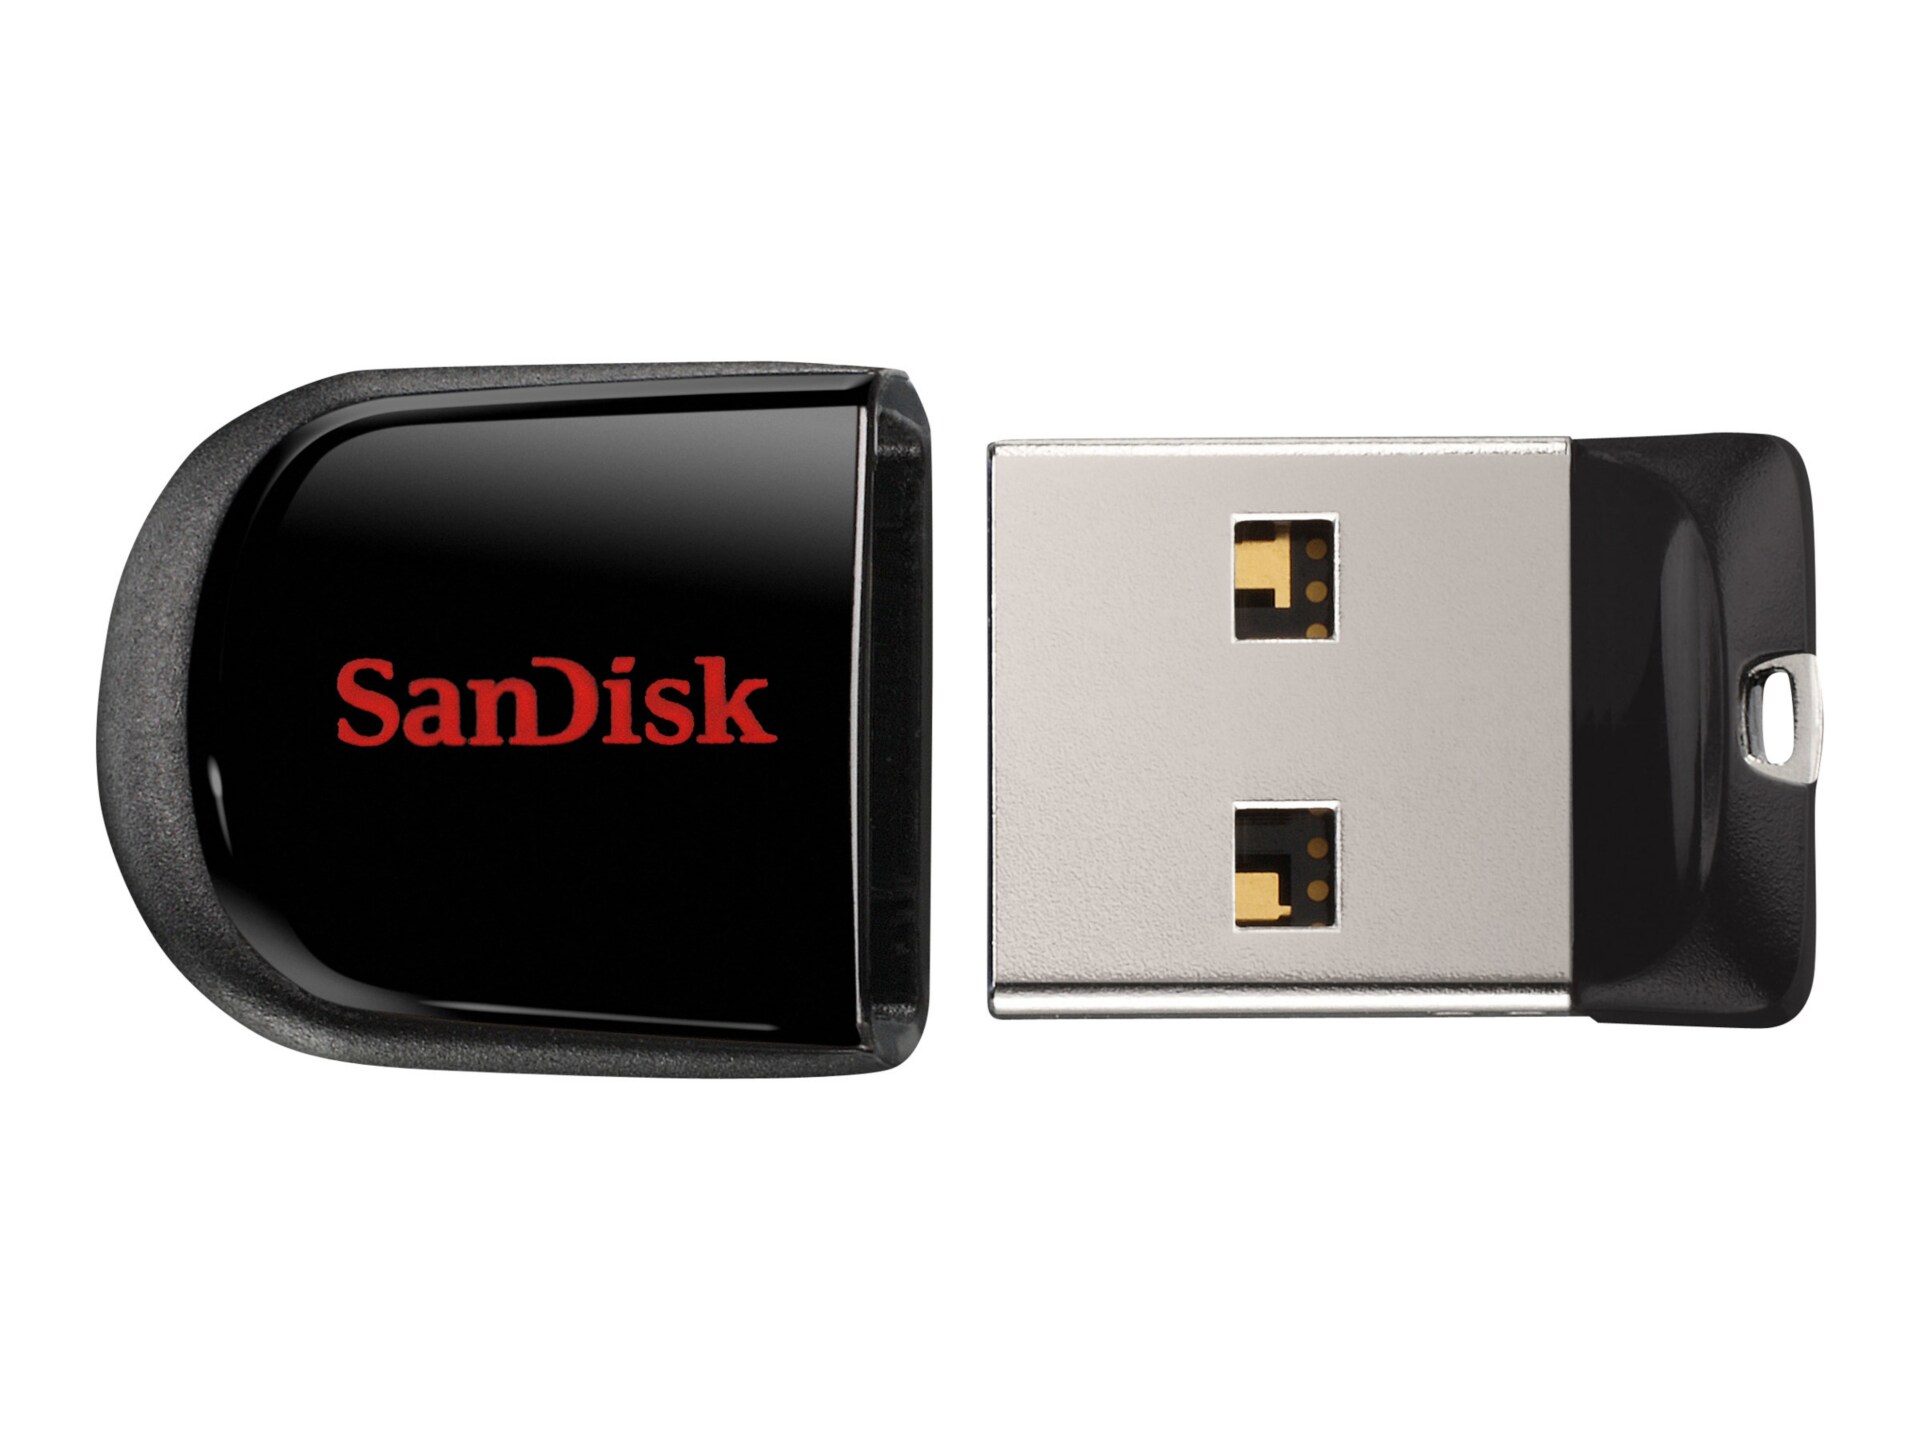 SanDisk Cruzer Fit 8 GB USB 2.0